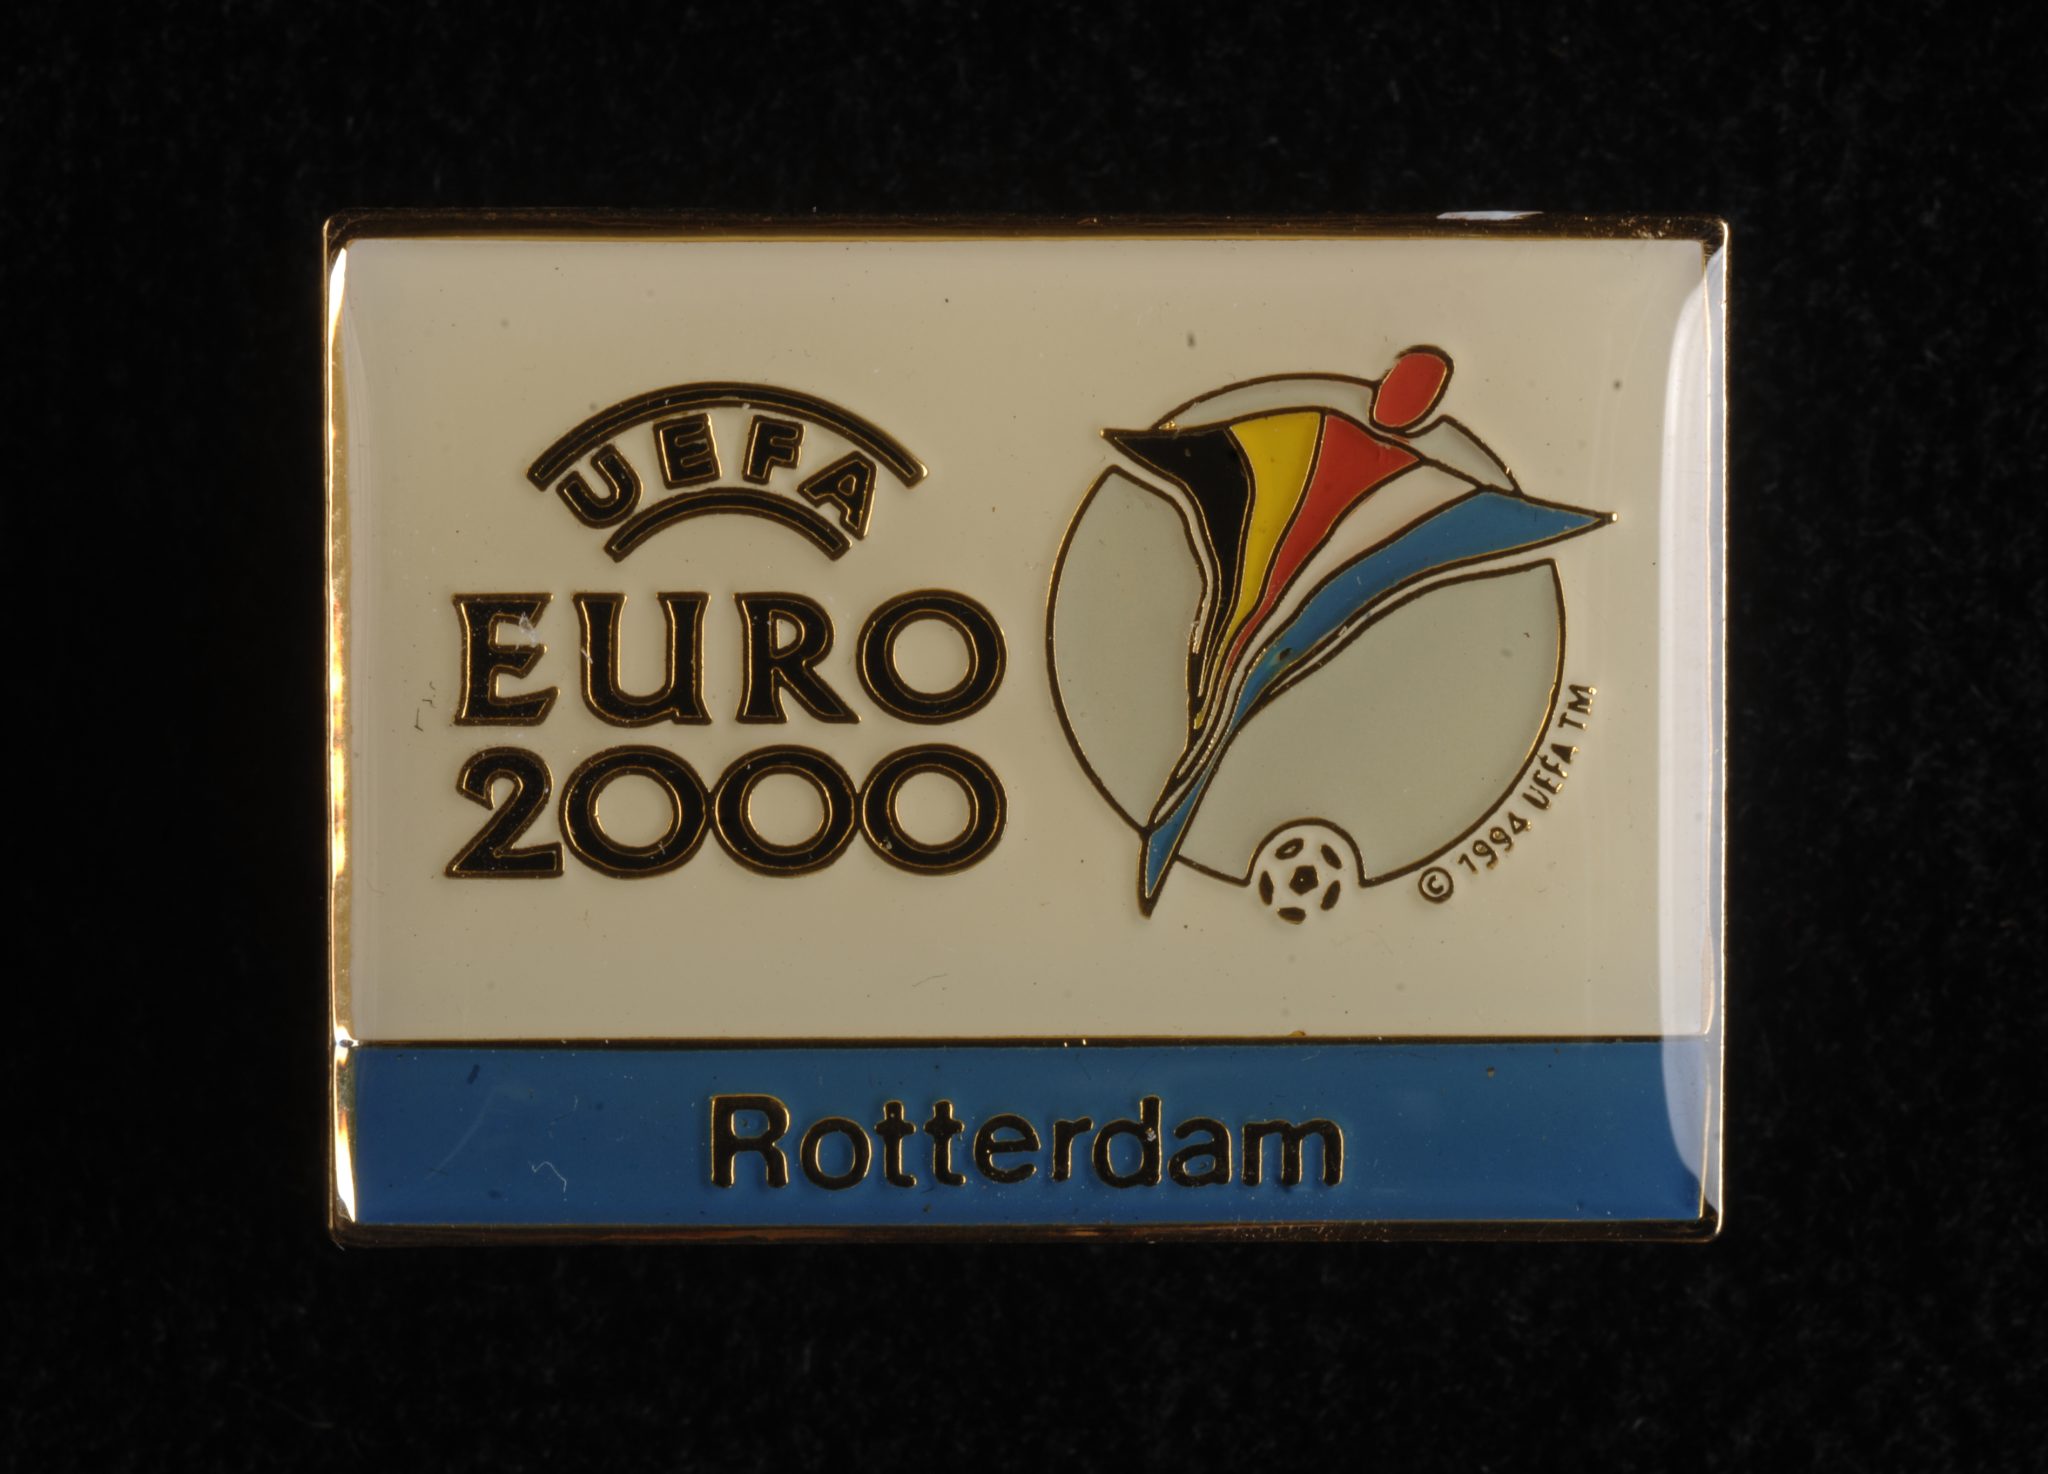 Mistrzostwa Europy w 2000 roku wygrali Francuzi fot. domena publiczna